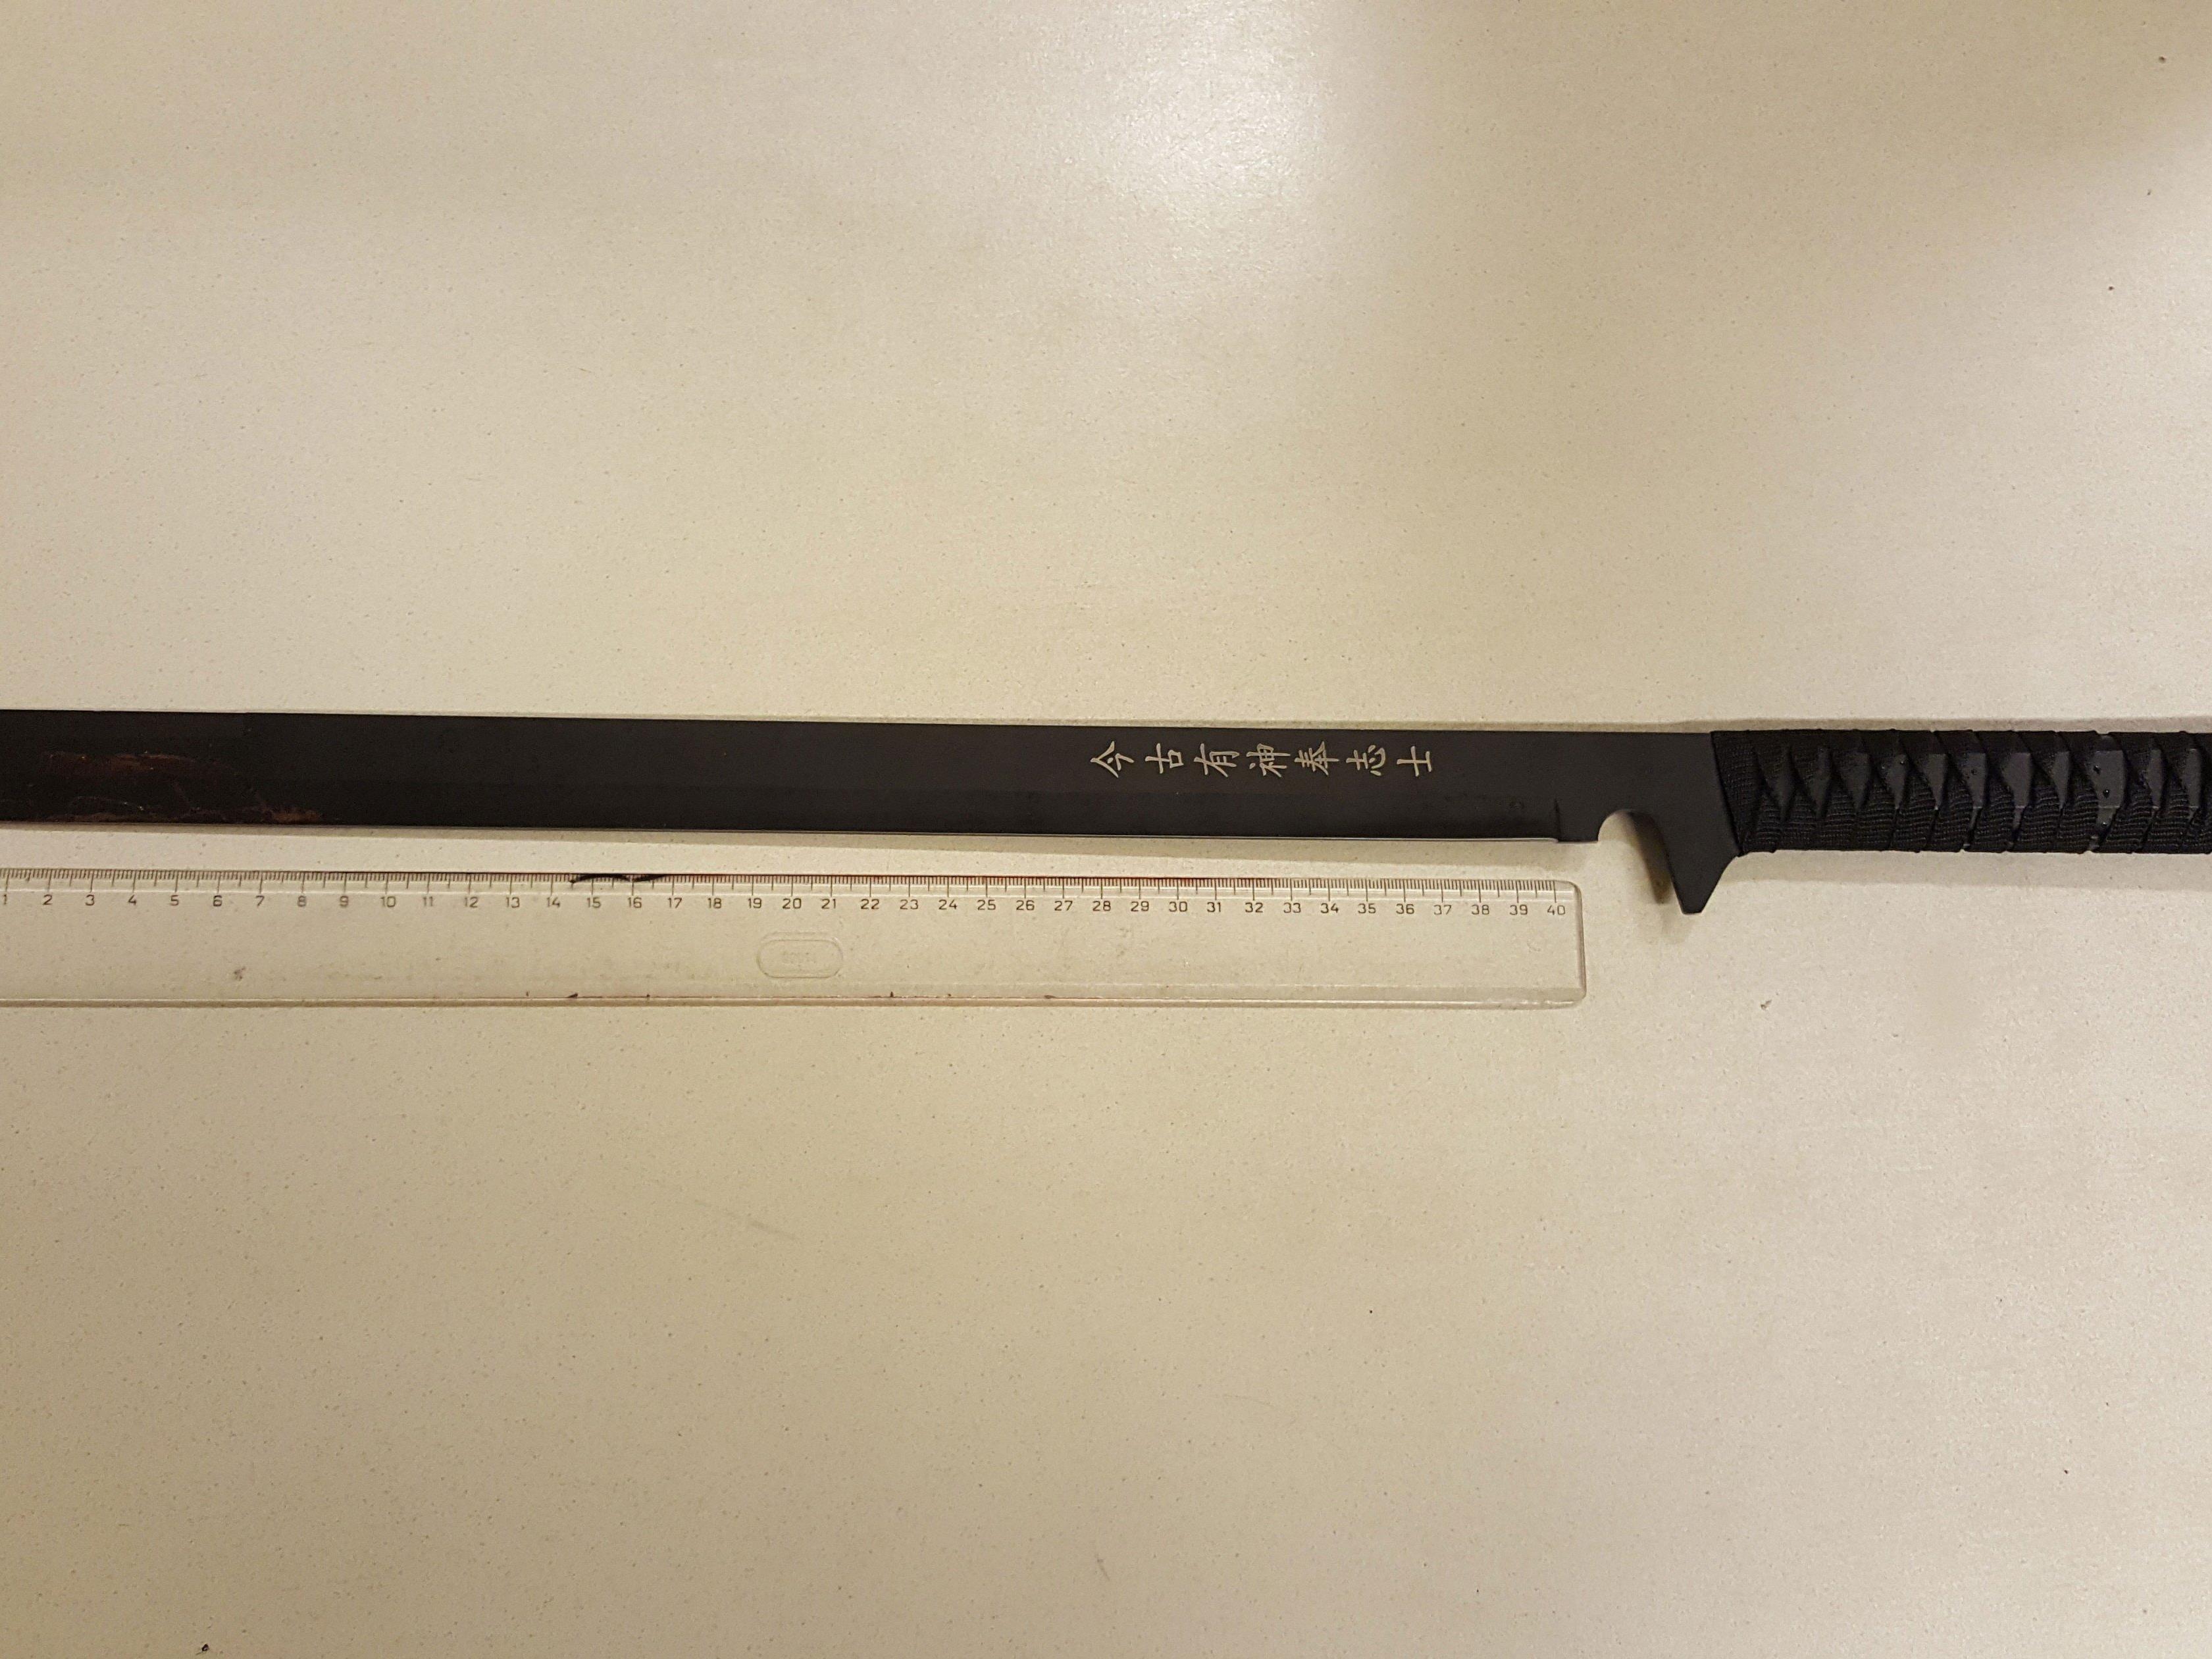 Eines der Messer, das bei der Attacke benutzt wurde.